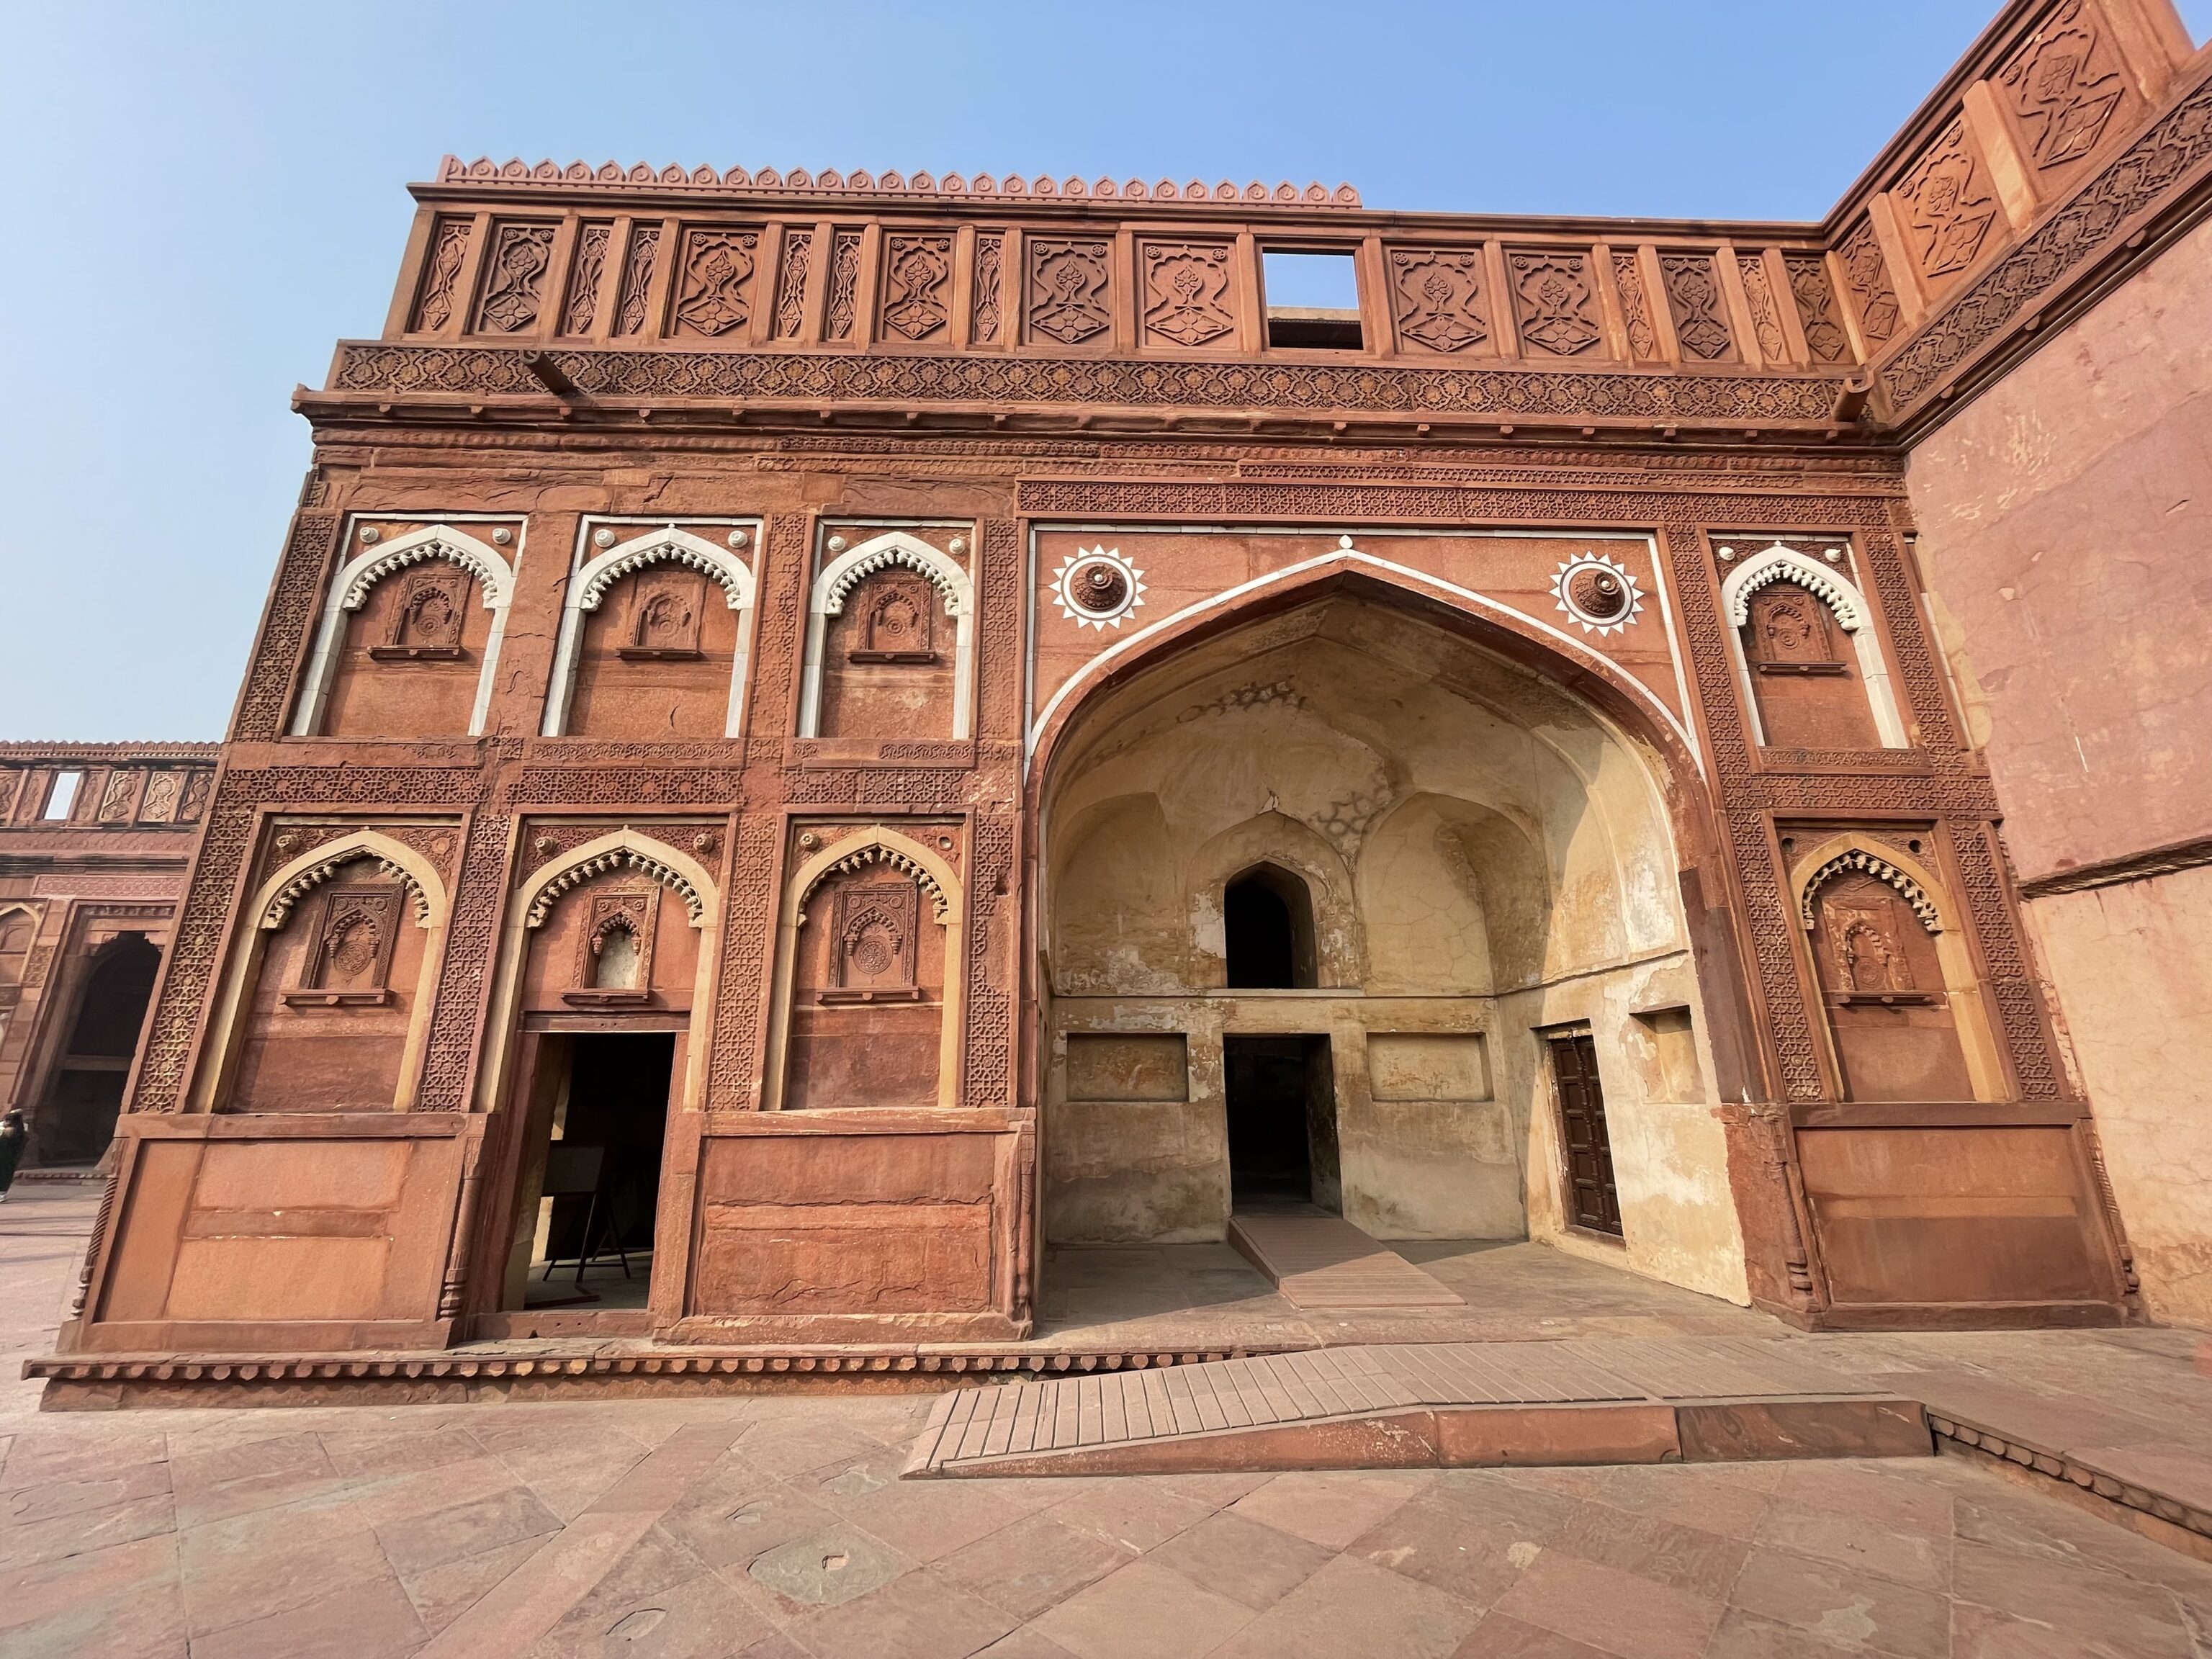 Studiereis naar Agra Fort in Agra in Noord-India